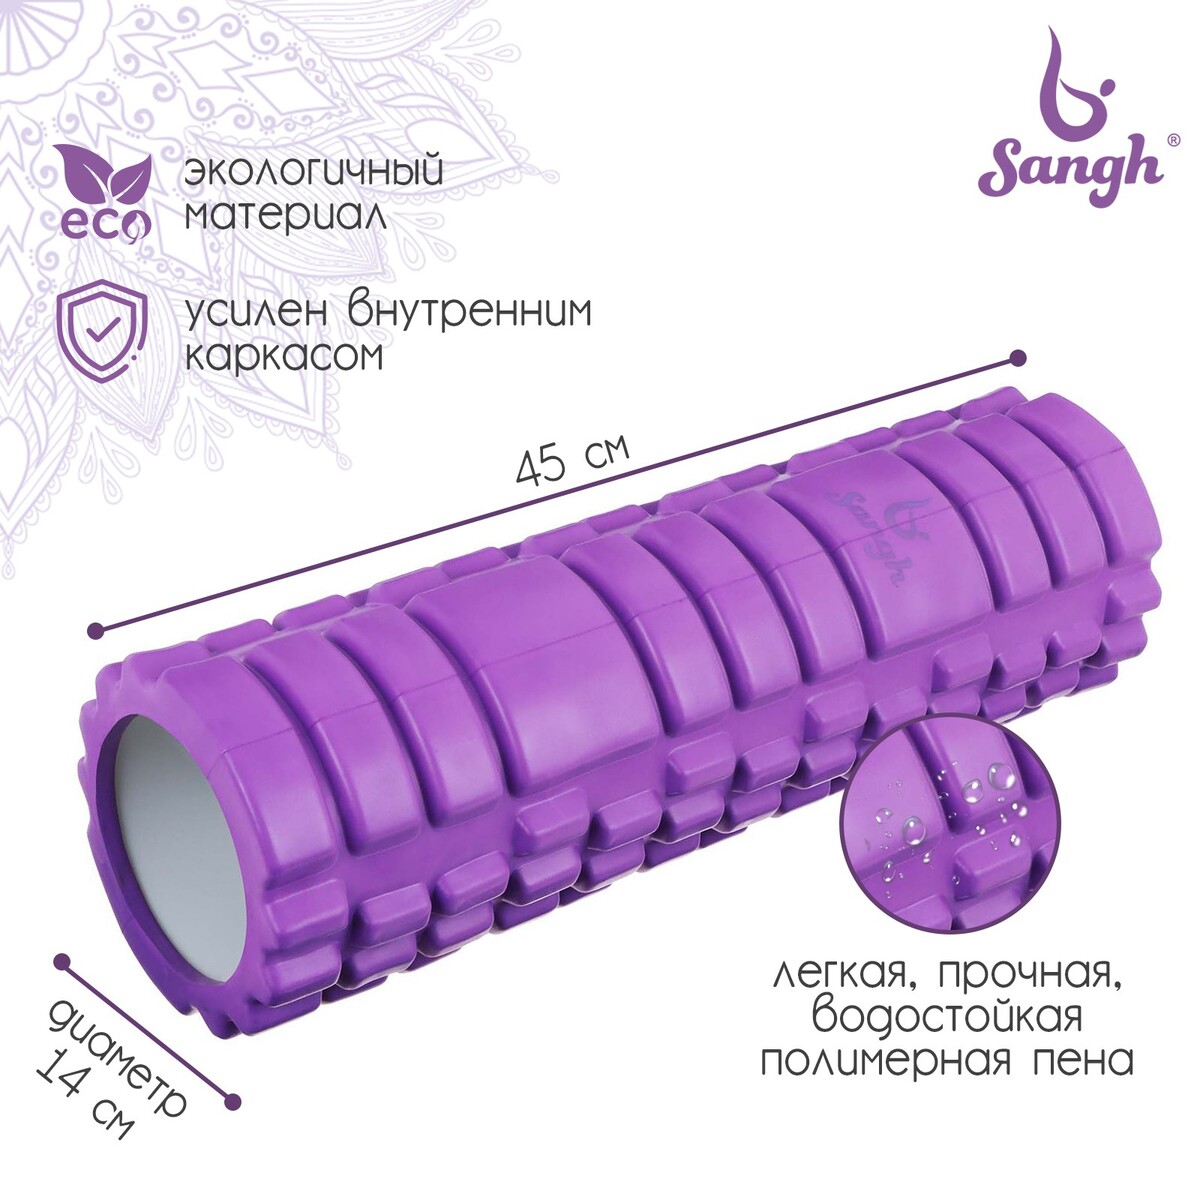 Ролик массажный sangh, 45х14 см, цвет фиолетовый ролик для йоги sportex 60x15cm эпп литой d34362